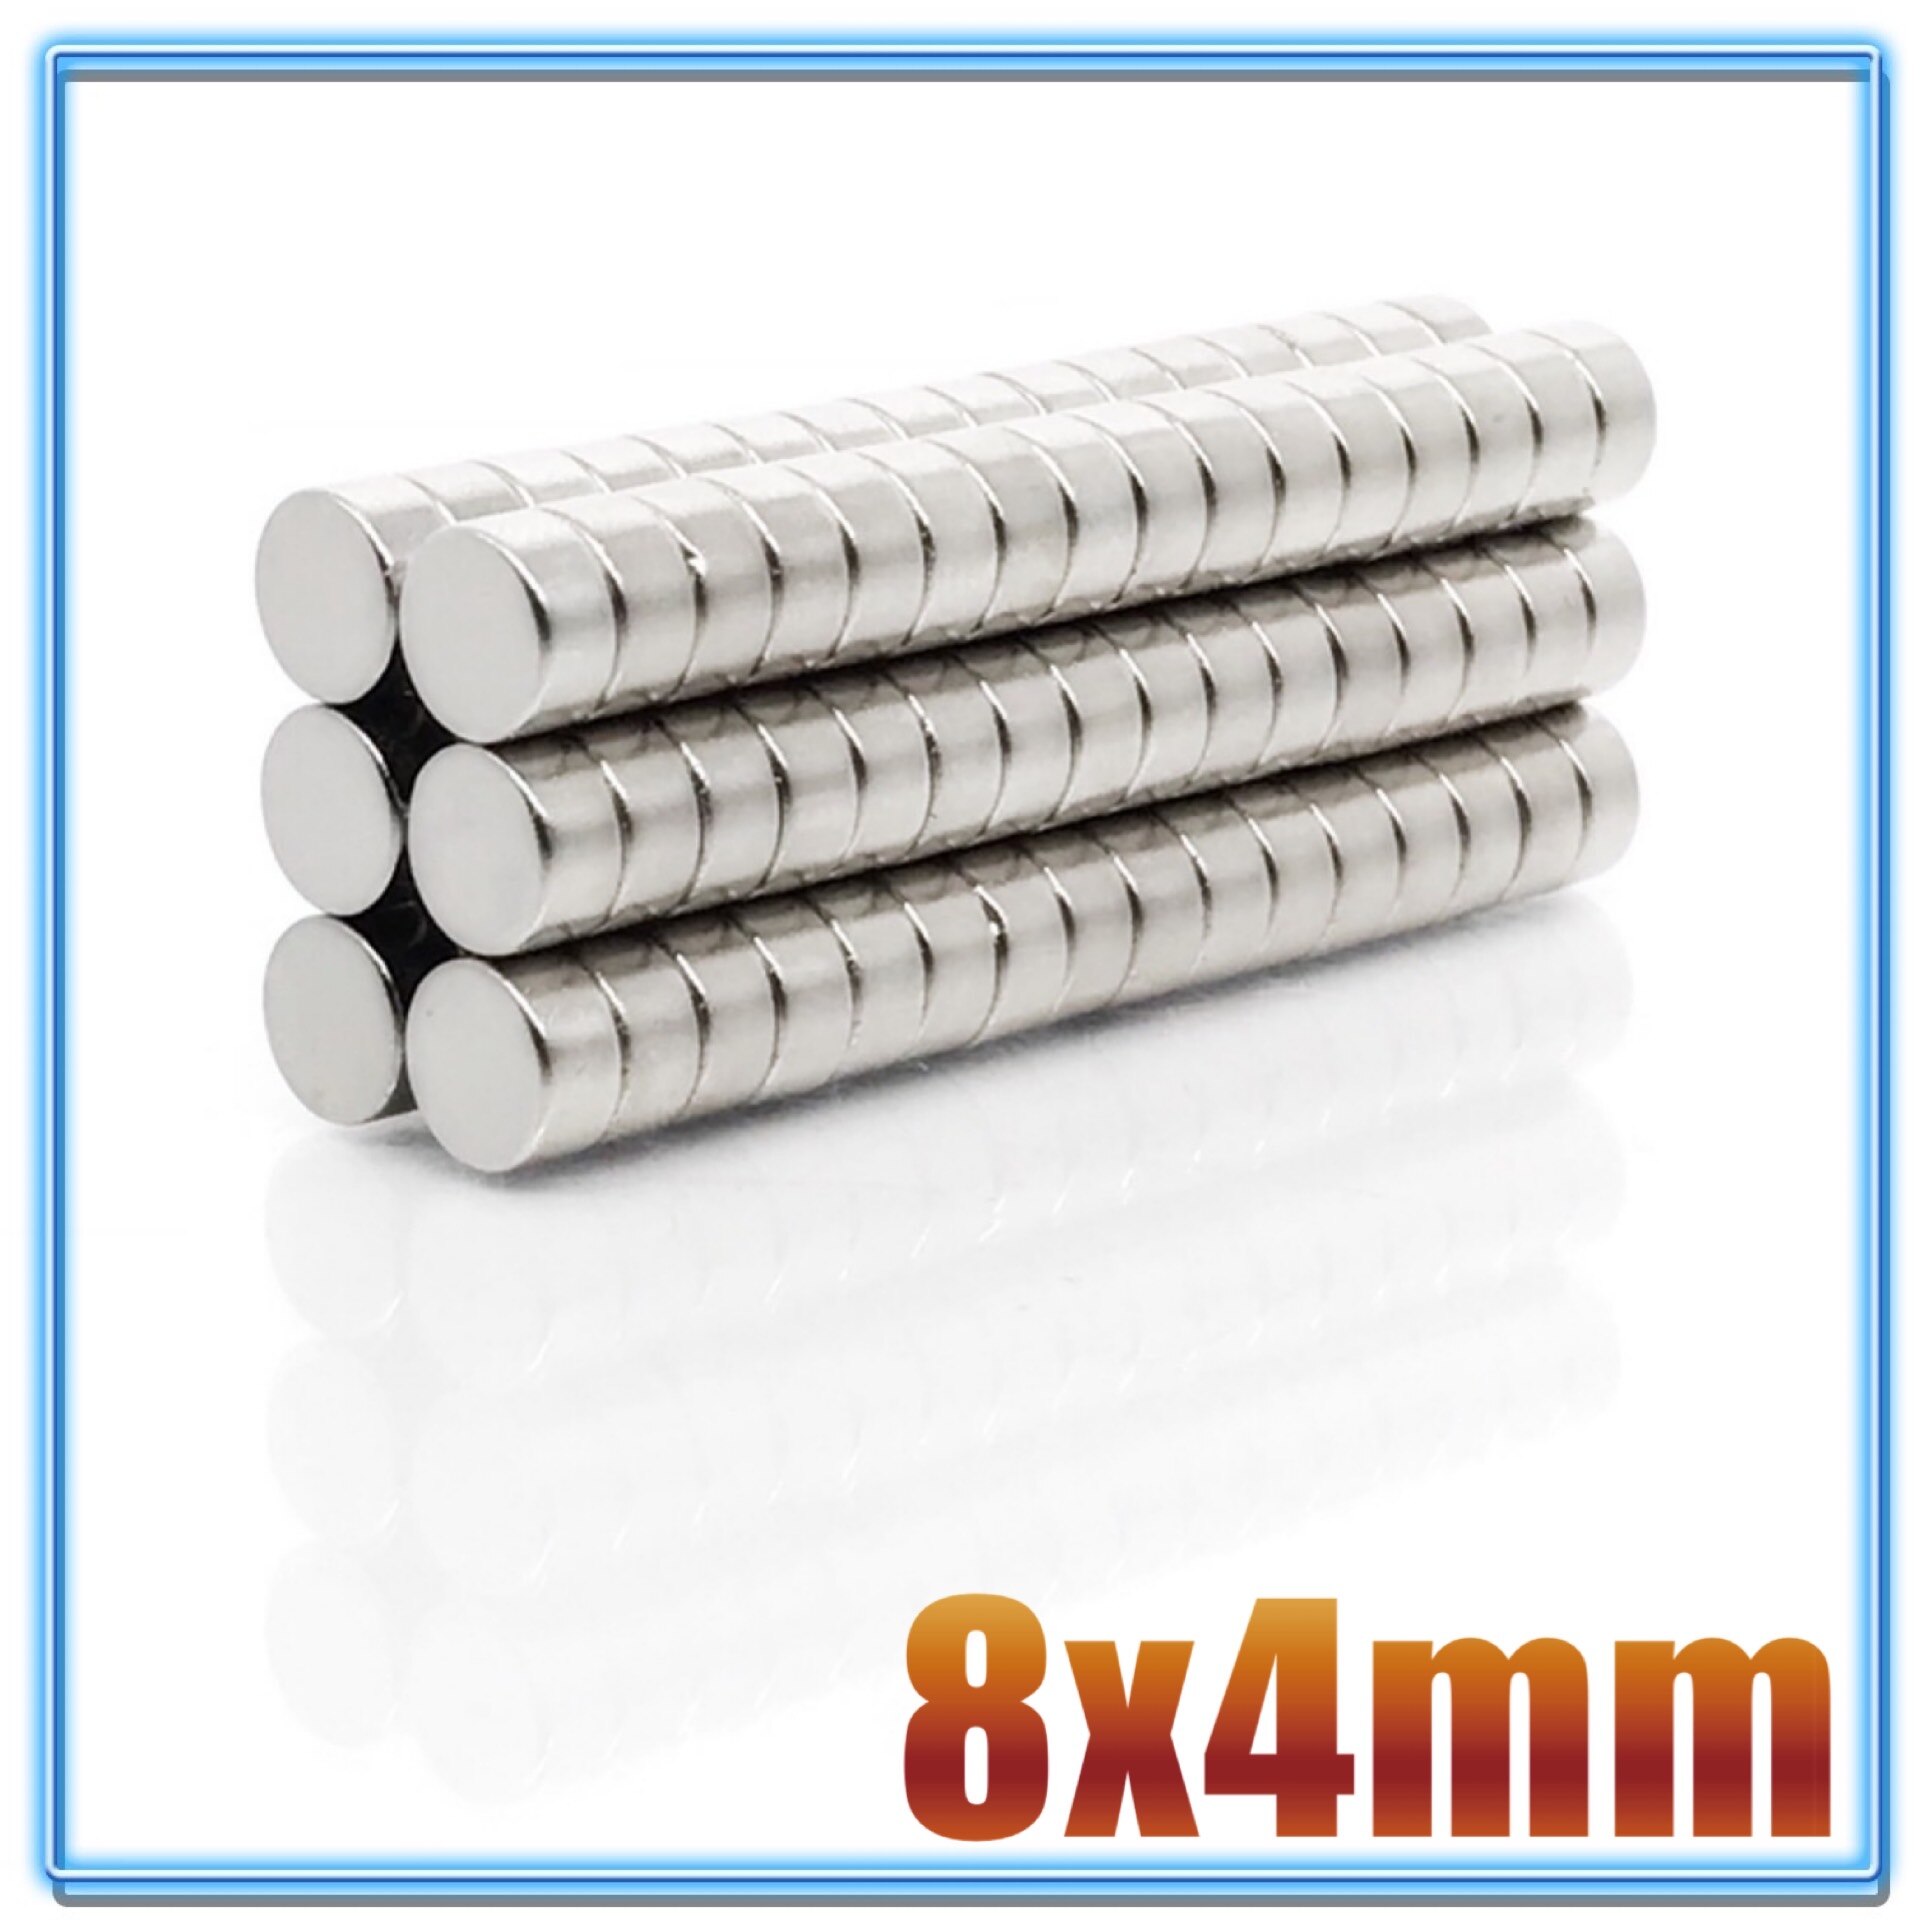 100 stk  n35 rund magnet 8 x 1 8 x 1.5 8 x 2 8 x 3 8 x 4 8 x 5 8 x 6 8 x 10 mm neodymmagnet permanent ndfeb superstærke kraftige magneter: 8 x 4(100 stk)